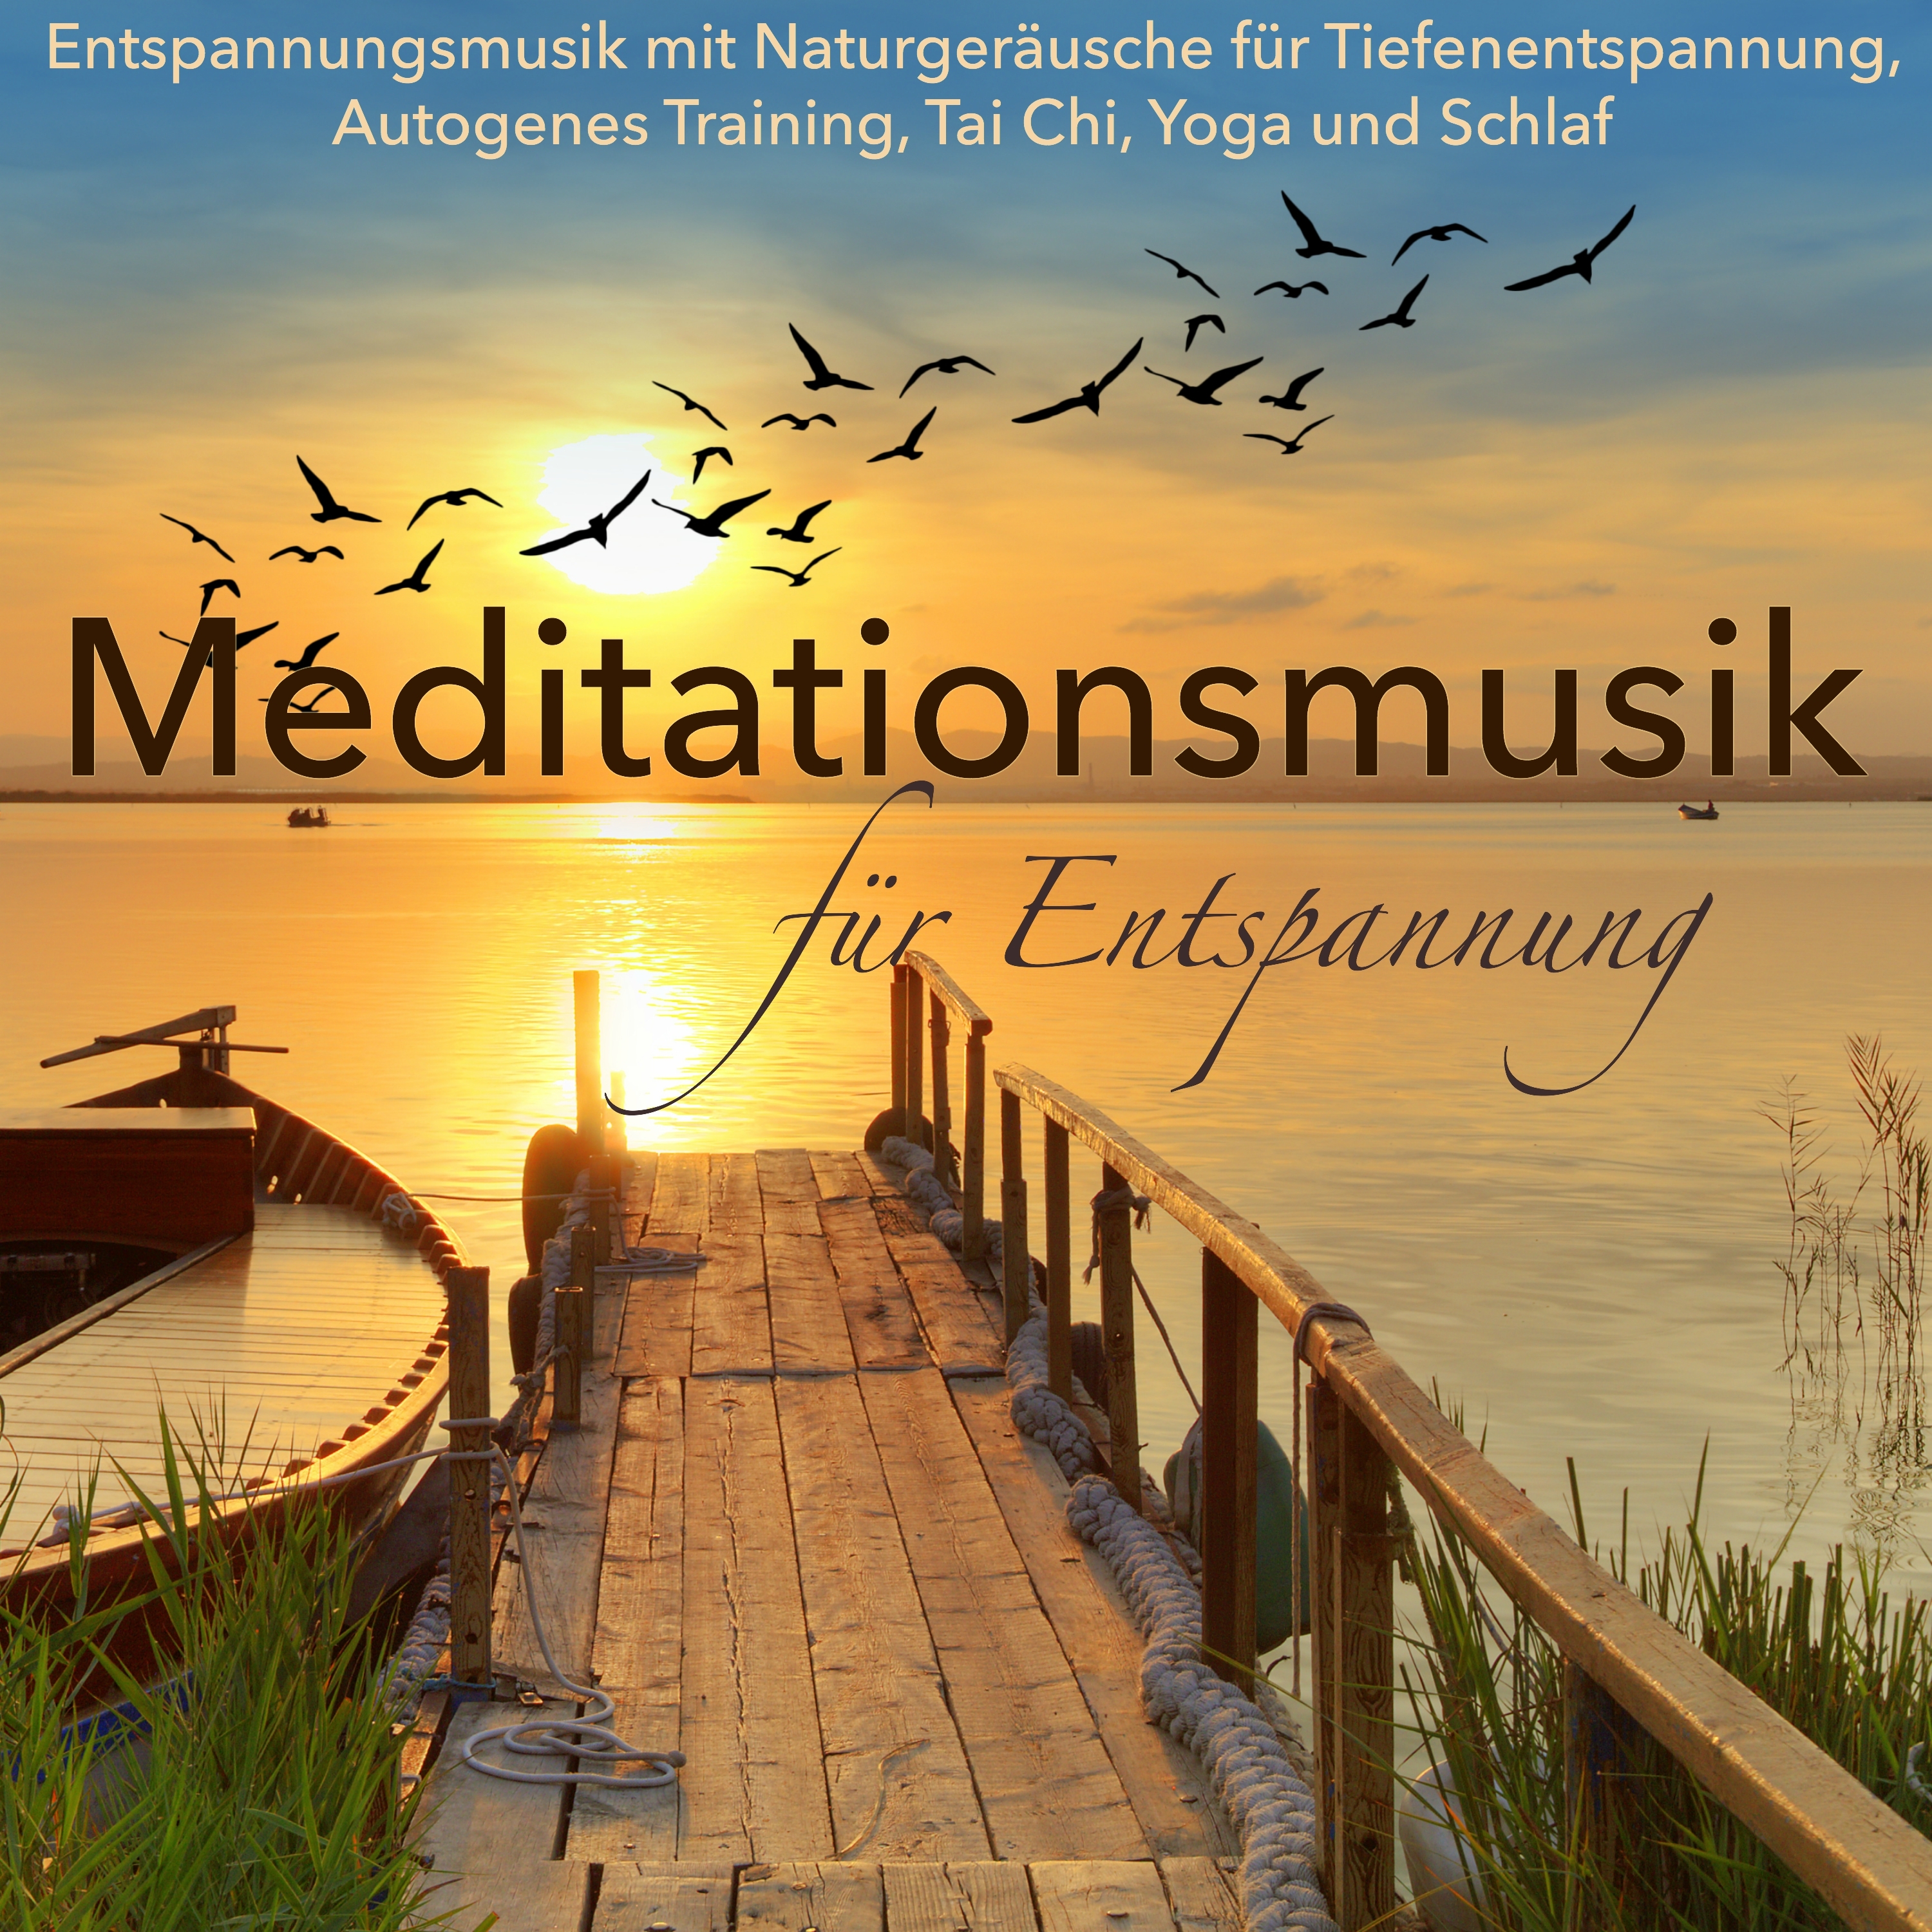 Meditationsmusik für Entspannung – Entspannungsmusik mit Naturgeräusche für Tiefenentspannung, Autogenes Training, Tai Chi, Yoga und Schlaf